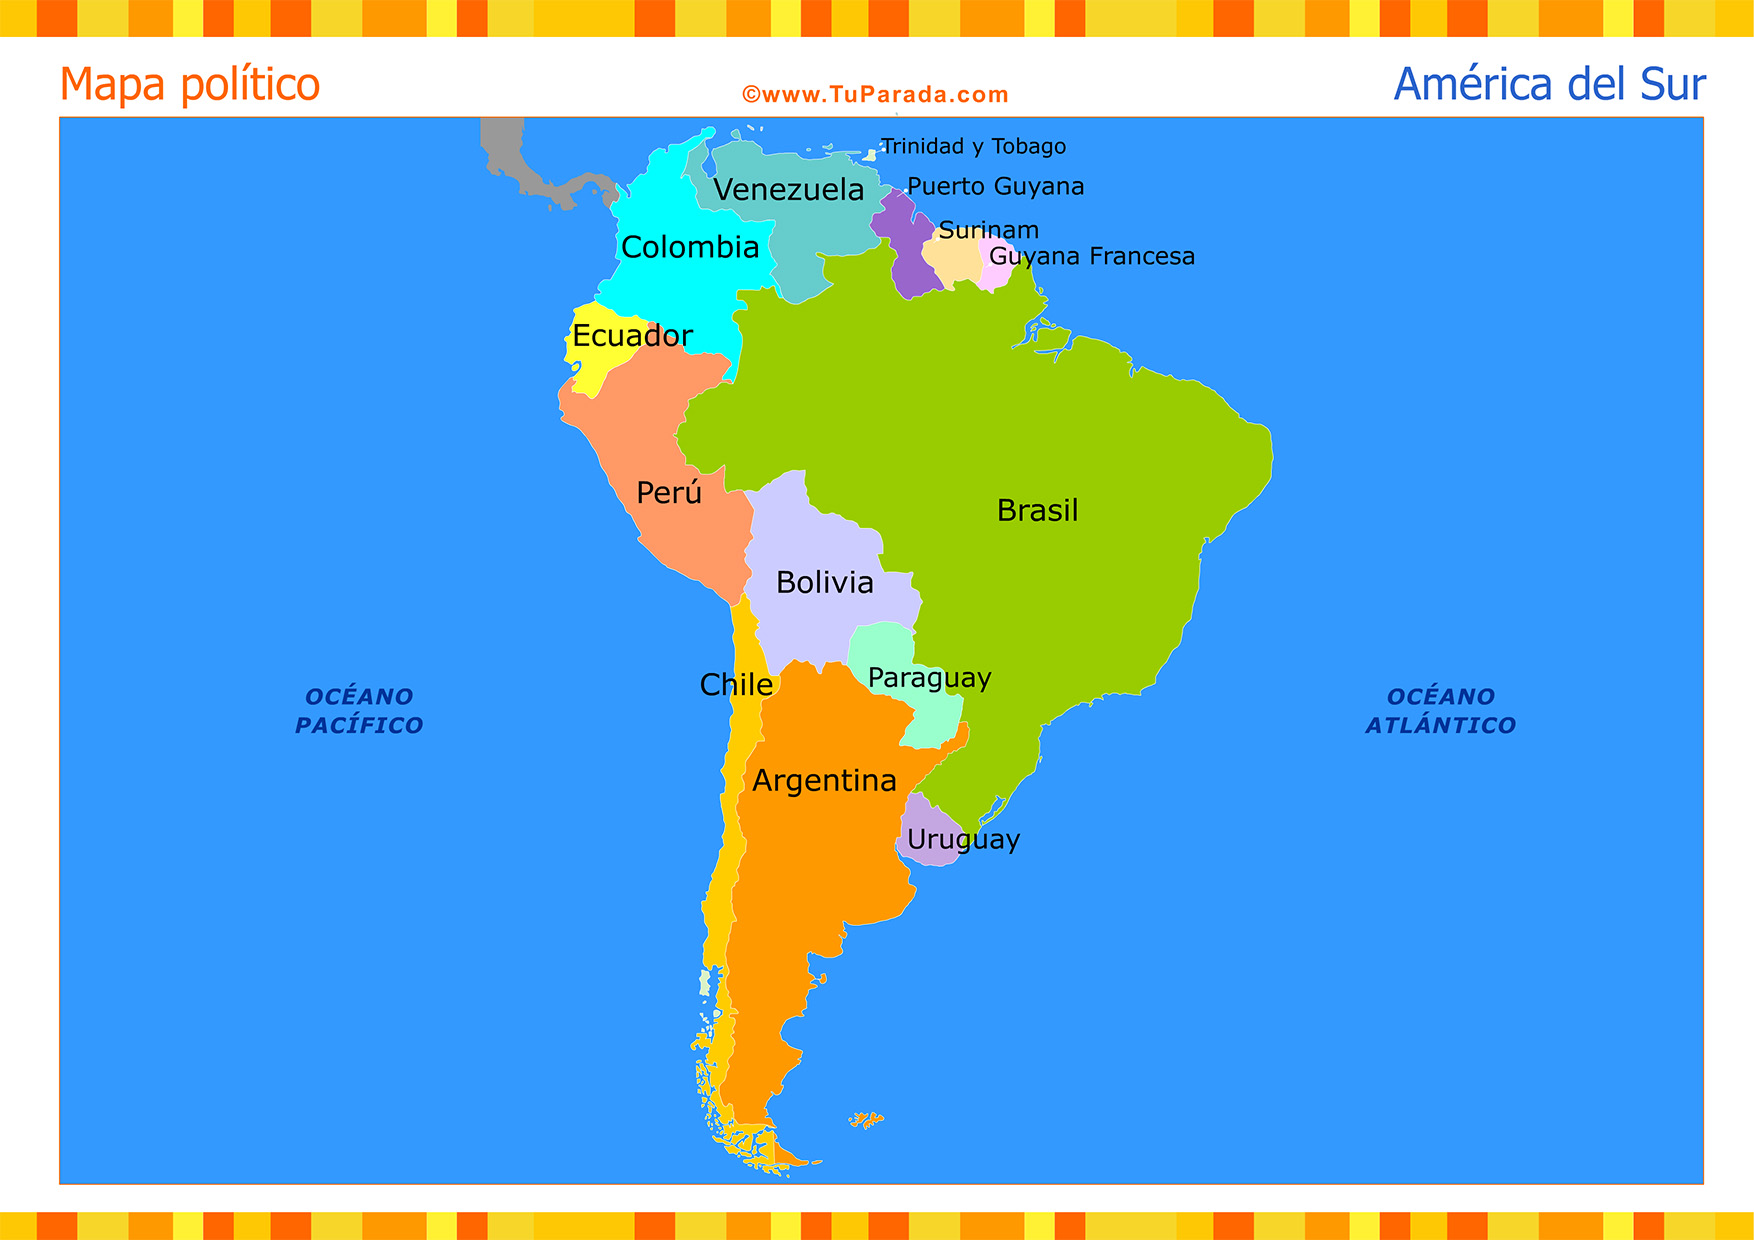 Mapa de América del Sur político